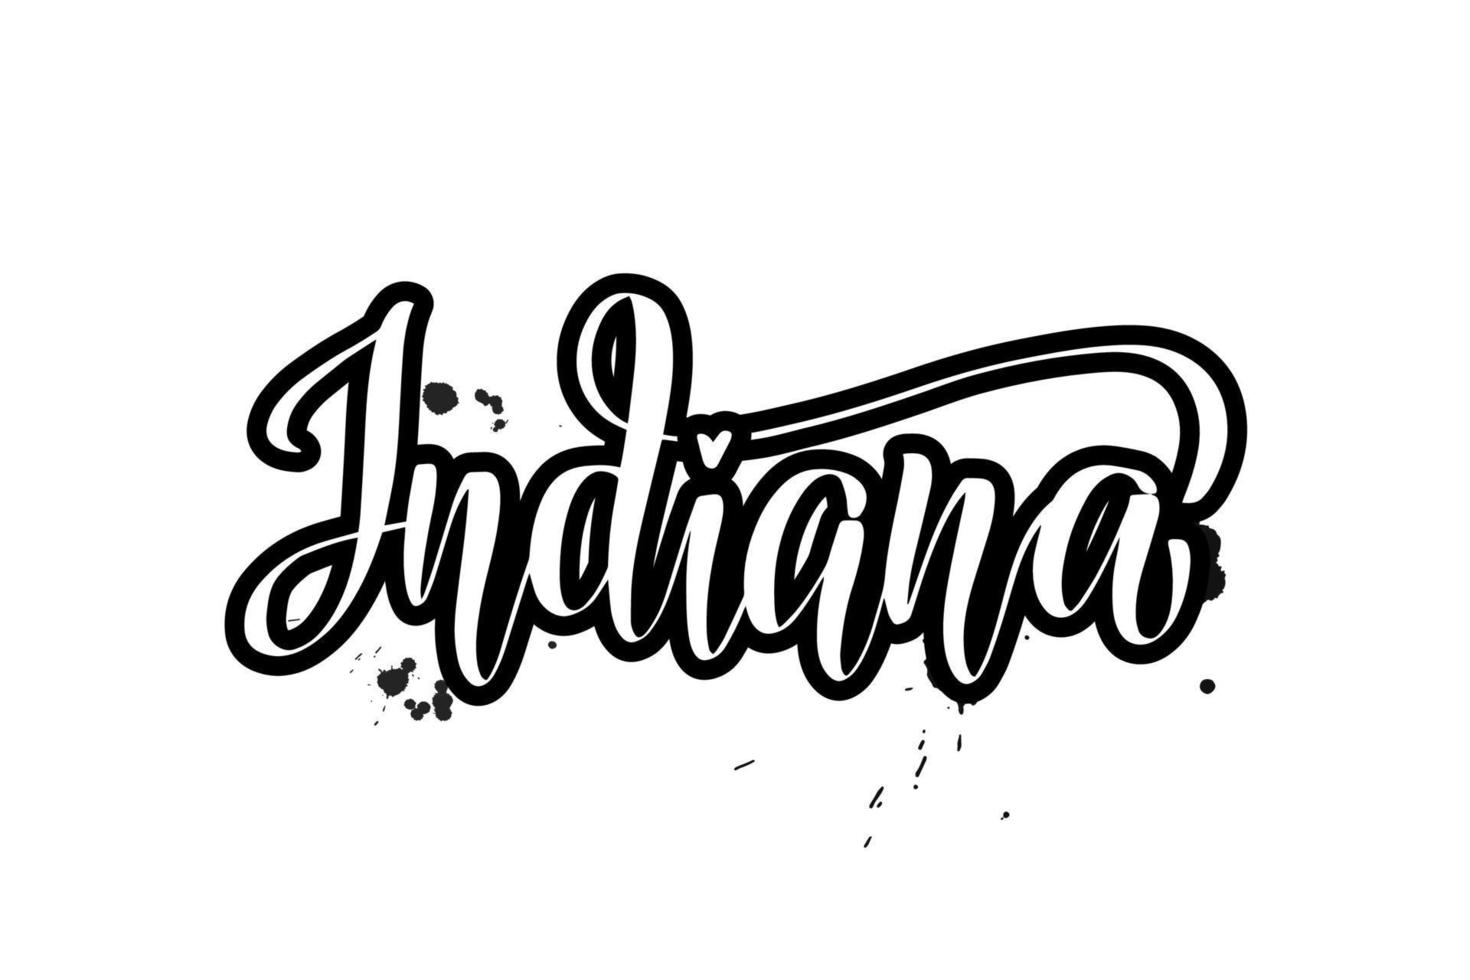 inspirierende handgeschriebene pinselbeschriftung indiana. vektorkalligraphieillustration lokalisiert auf weißem hintergrund. typografie für banner, abzeichen, postkarten, t-shirts, drucke, poster. vektor